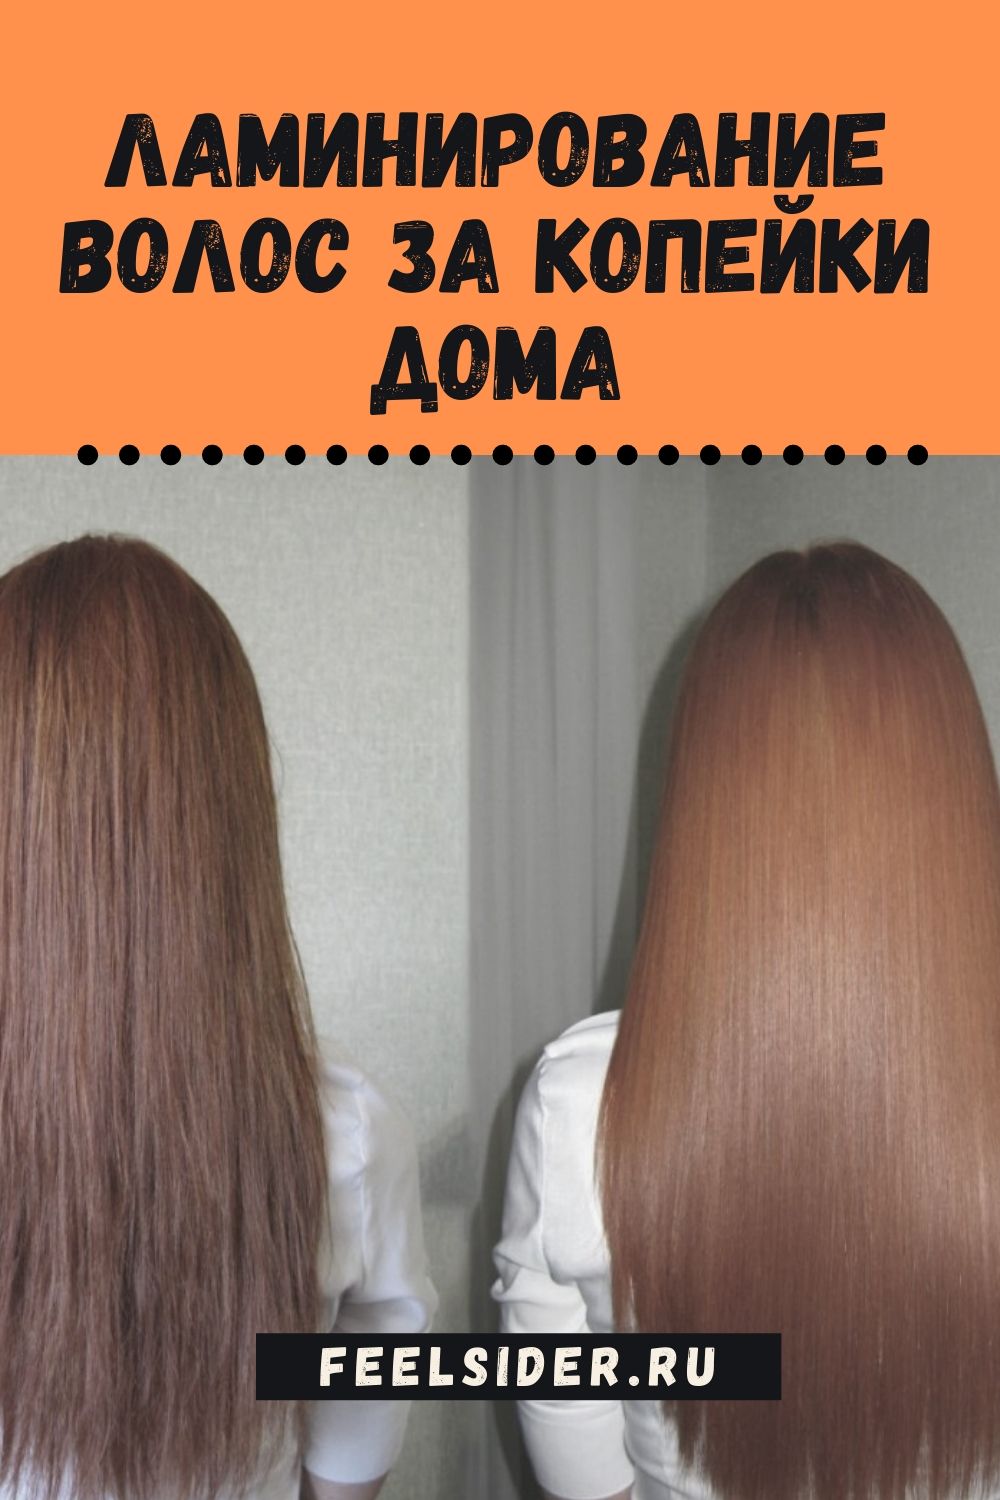 Рецепты ламинирования волос в домашних условиях и все, что нужно для эффективного биоламинирования